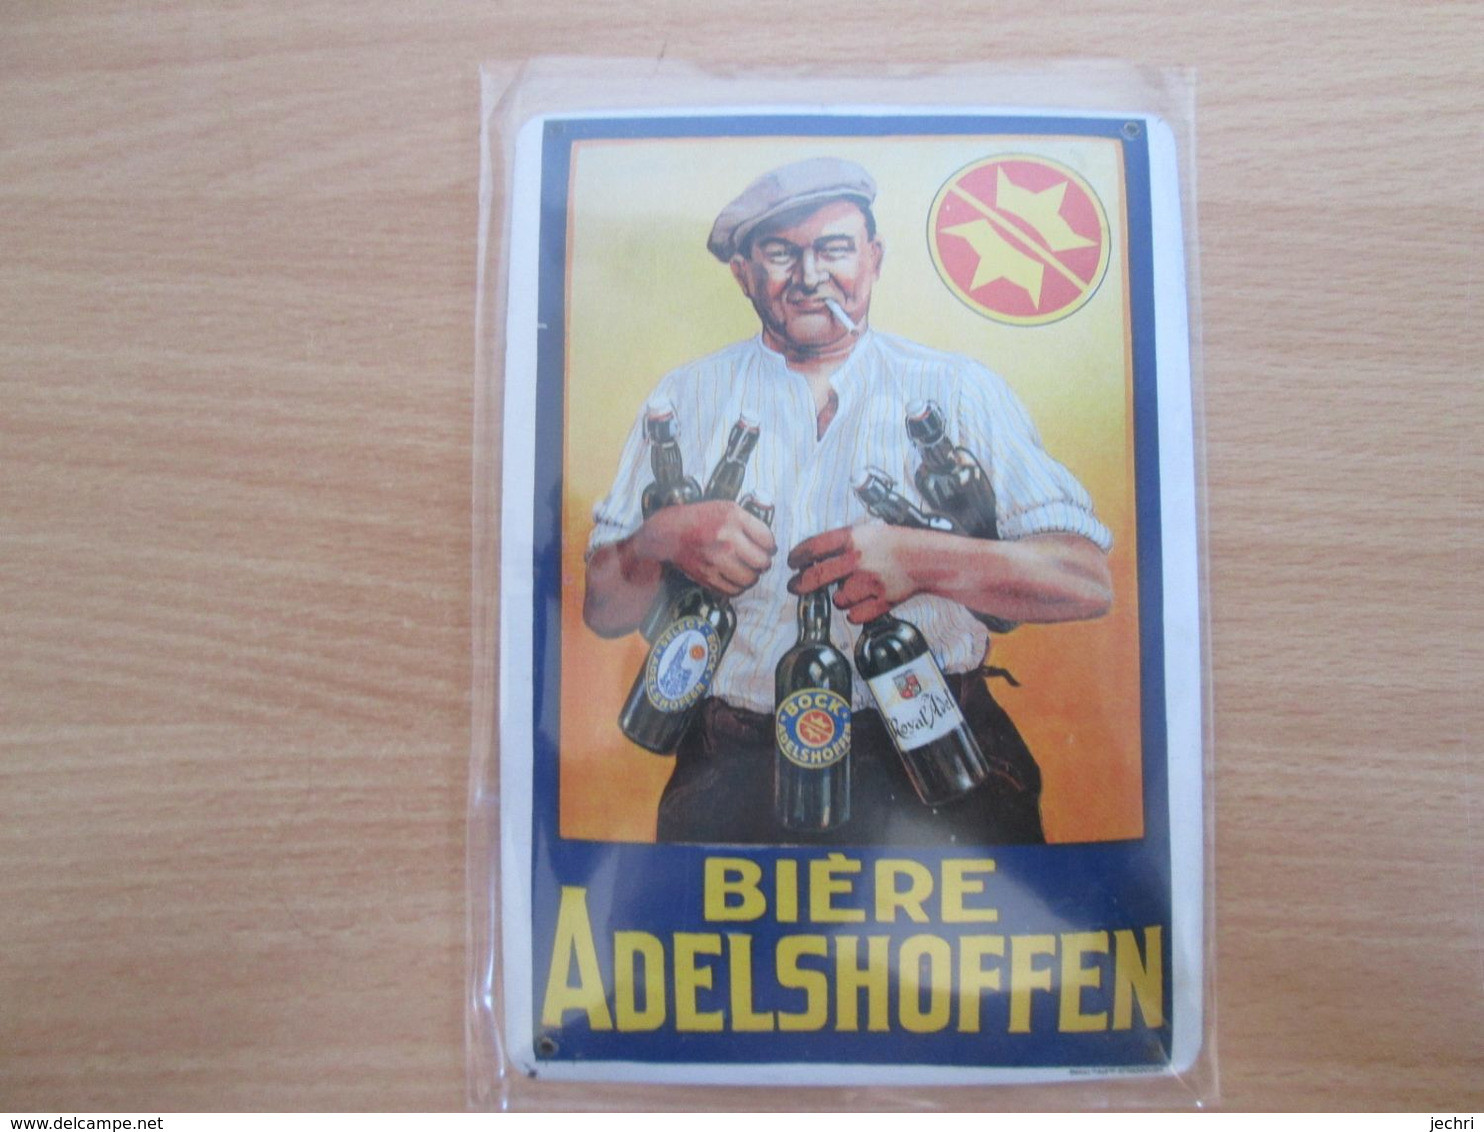 Petite Tole Publicitaire Biere Adelshoffen  . Format Carte Postale - Signs